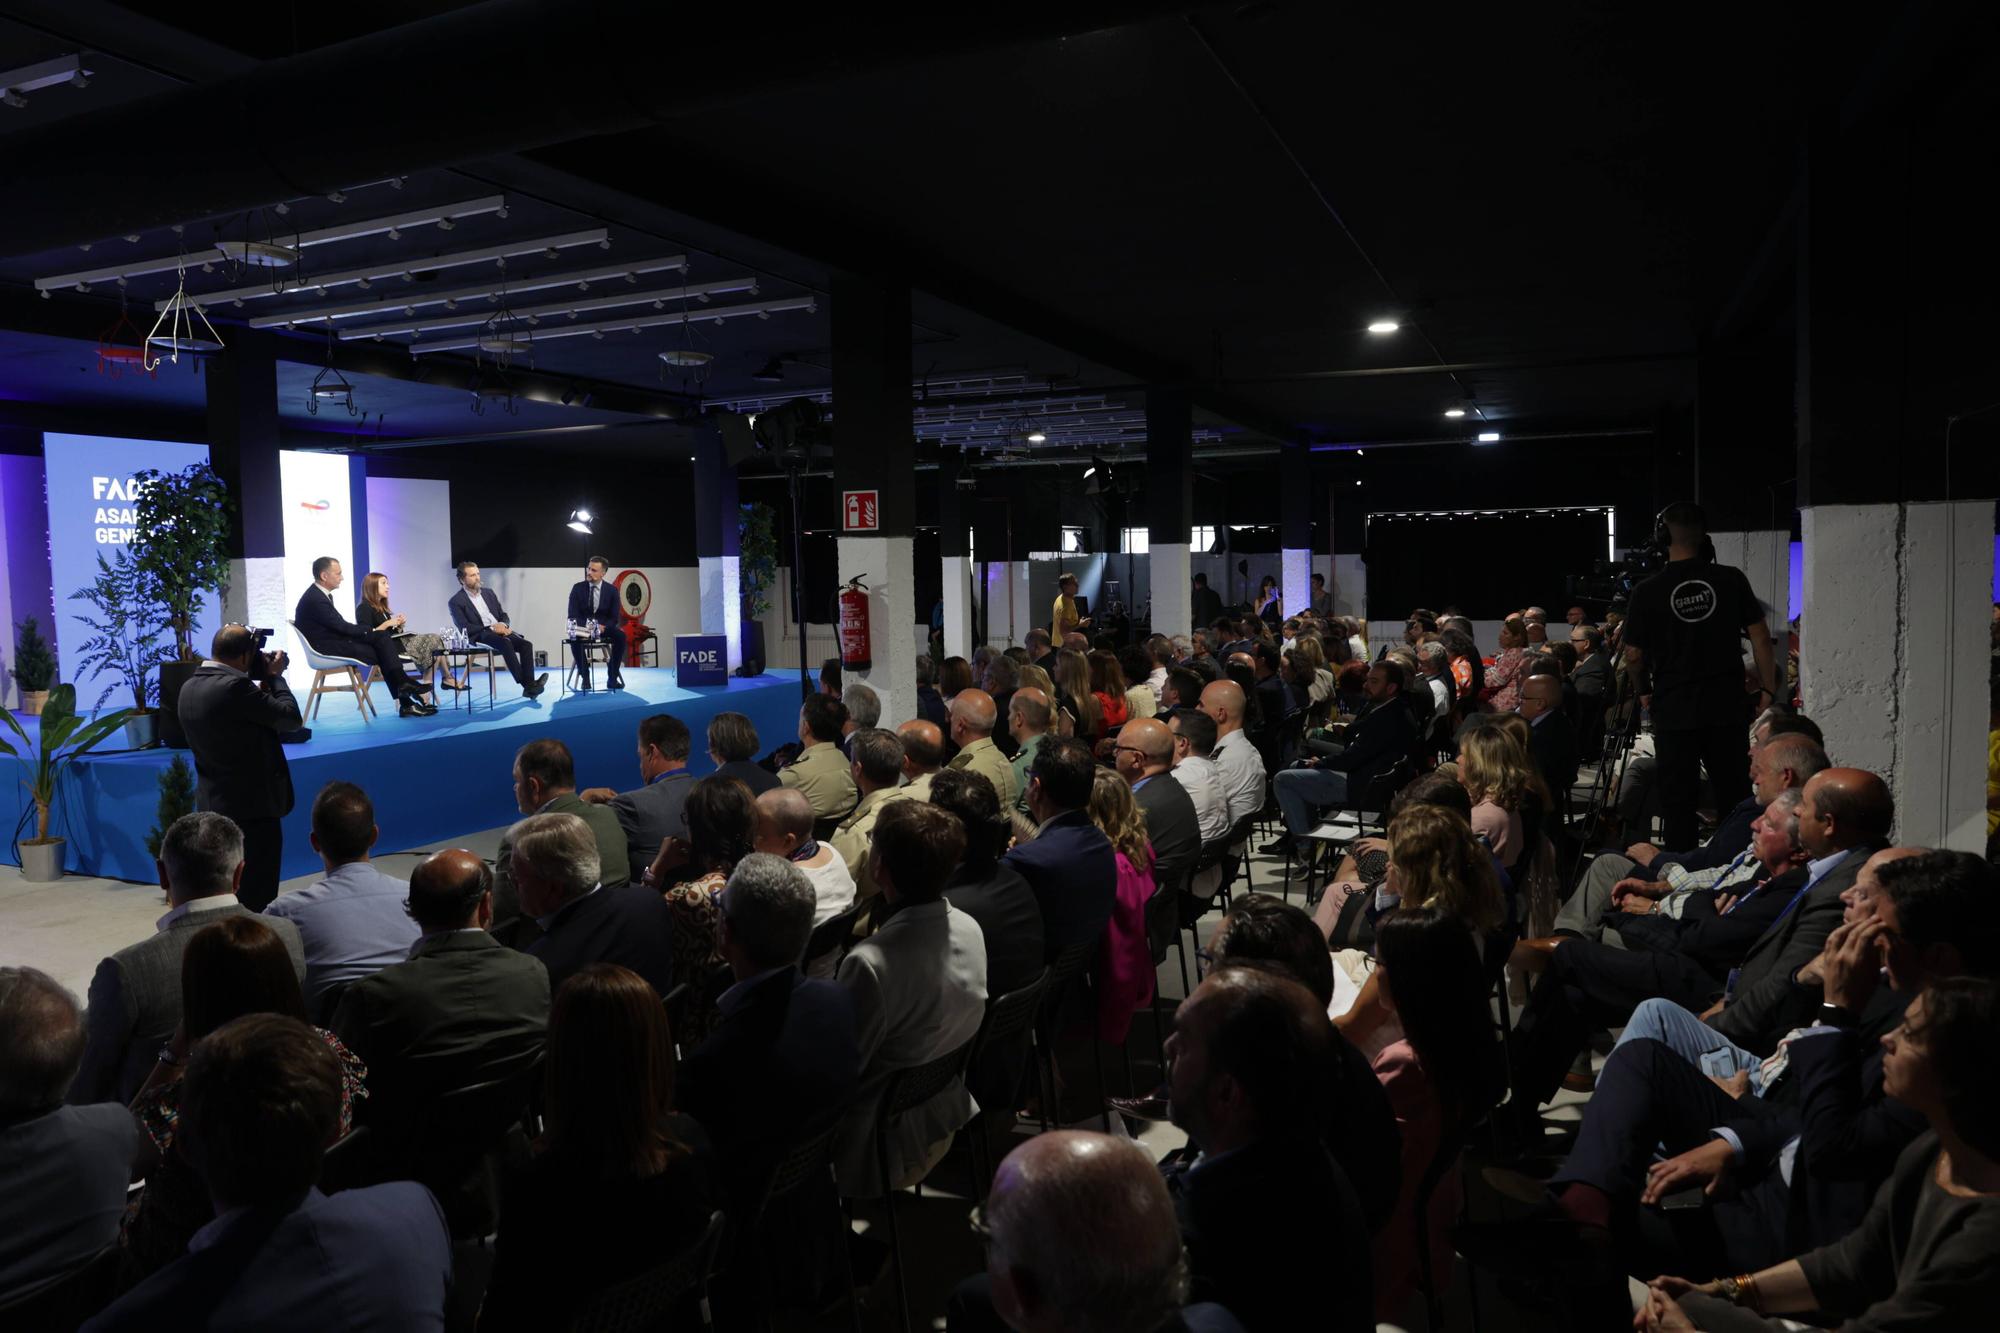 En imágenes: FADE celebra su asamblea anual en el Pozo Fondón